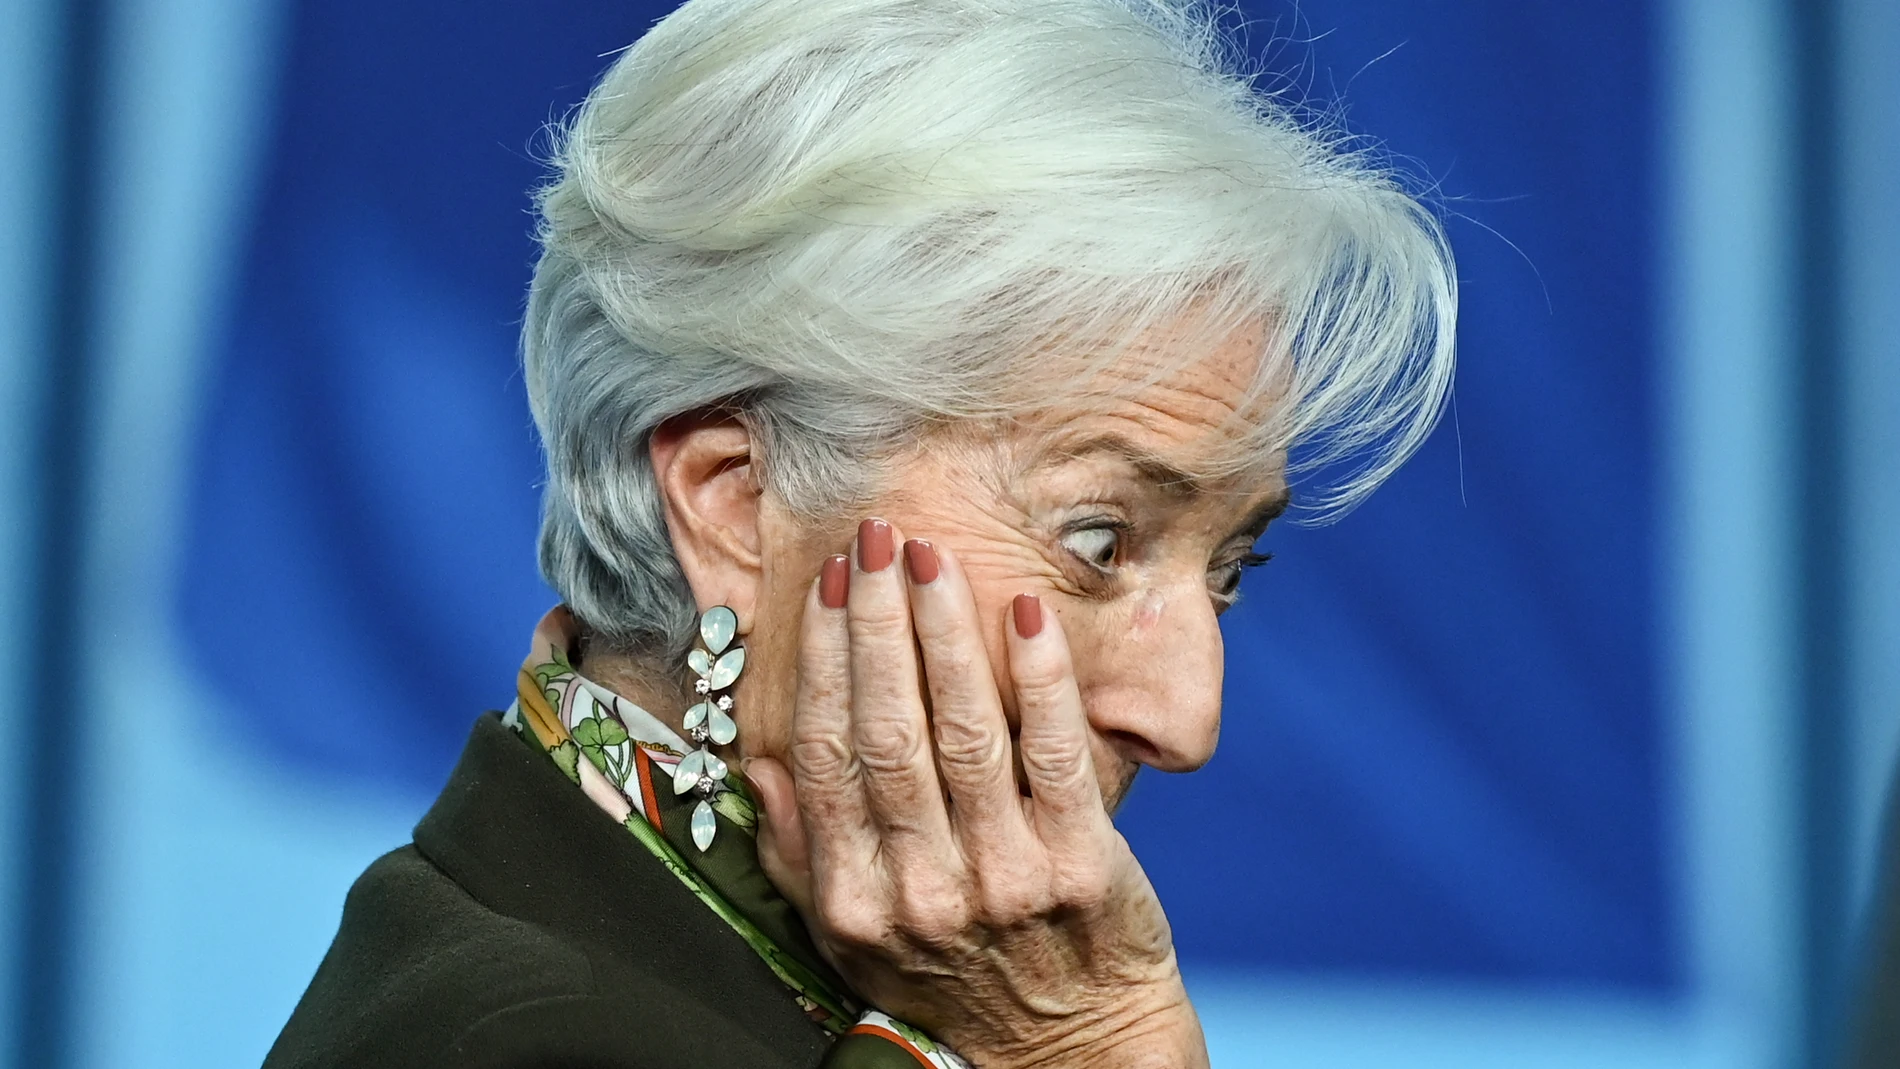 Economía- Los analistas esperan que el BCE suavice las subidas de tipos en próximas reuniones